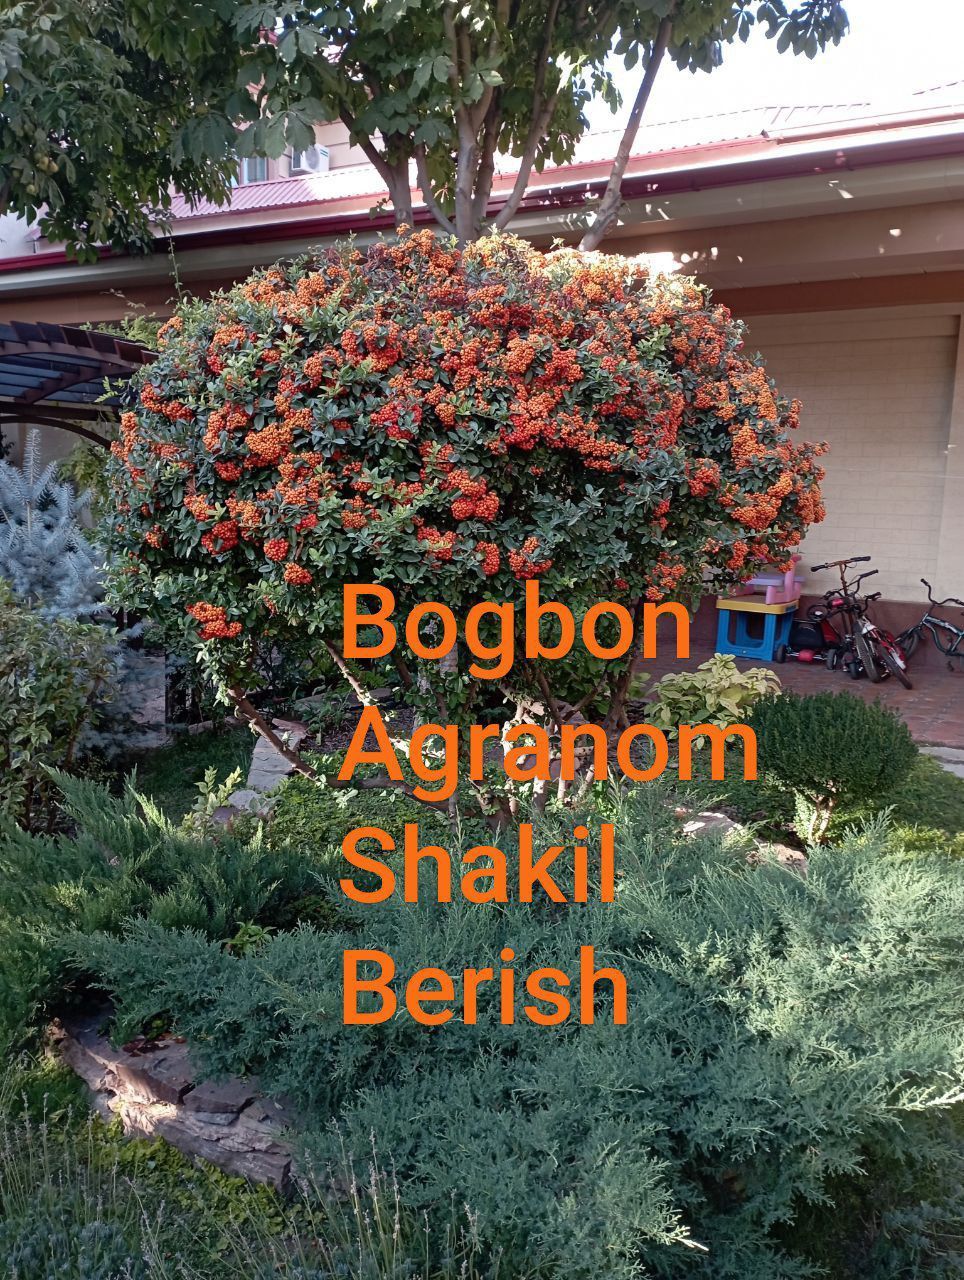 Bogʻbon sadovnik 12 -yillik agranom